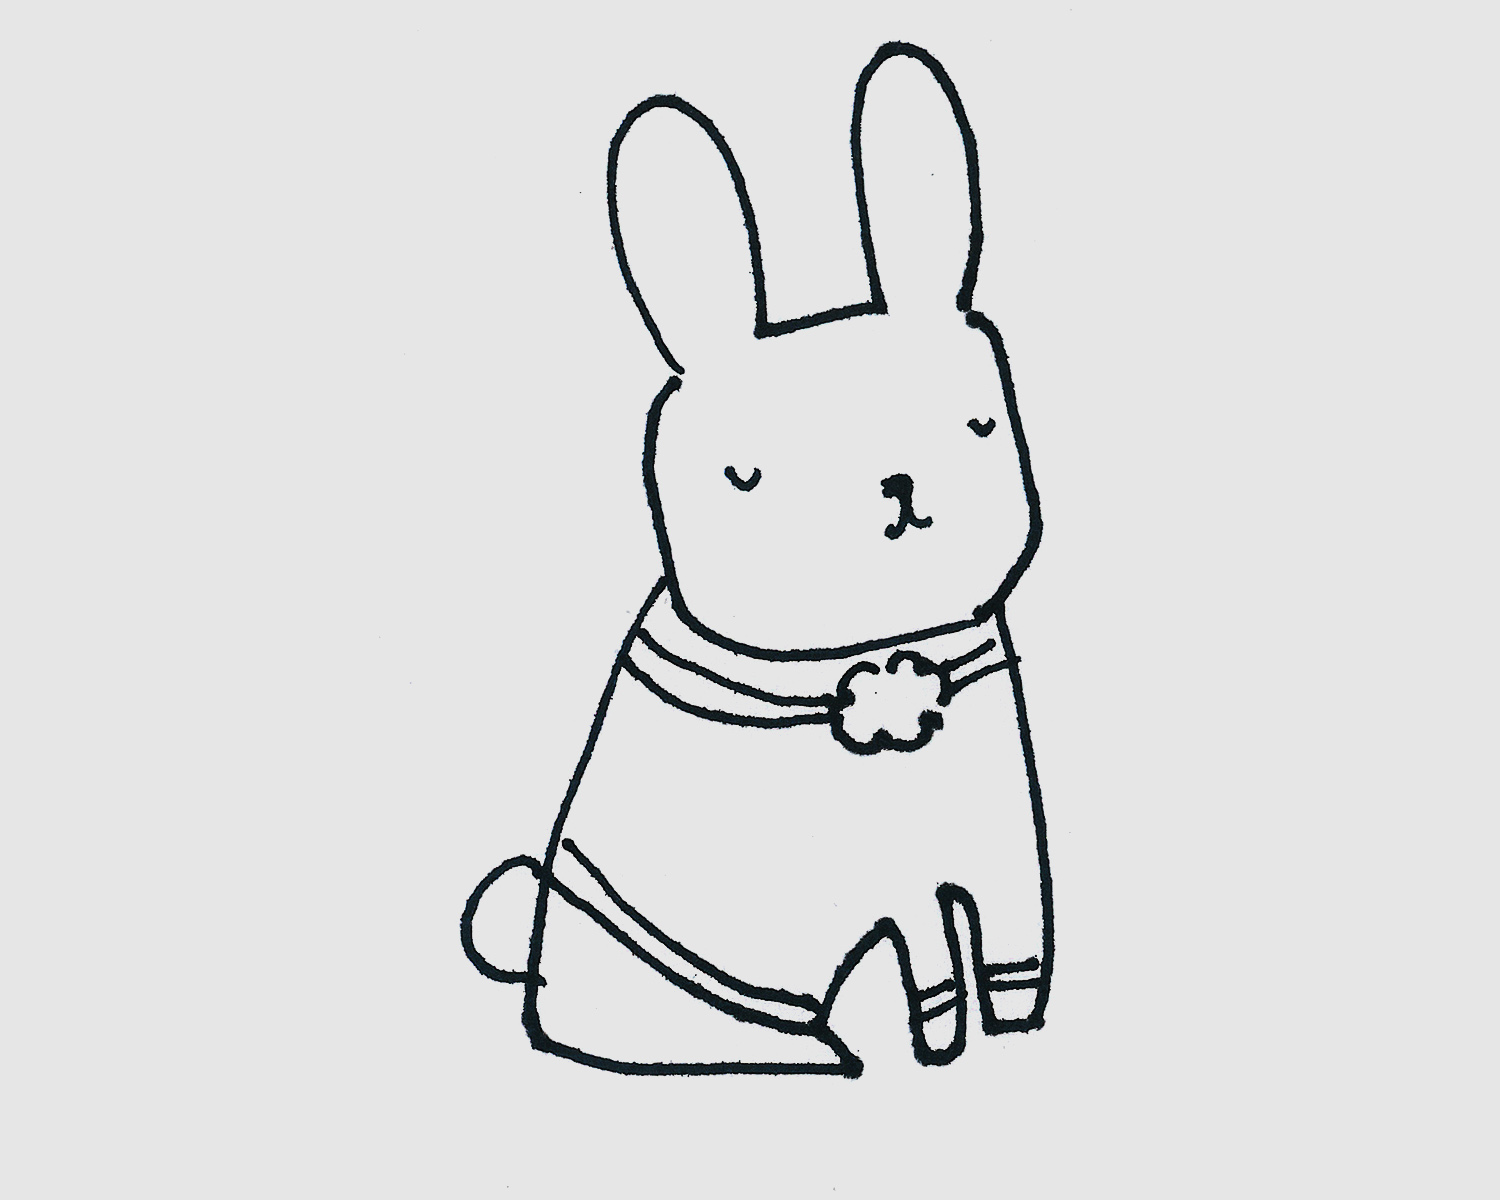 坐在月亮上的兔子简笔画画法图片步骤